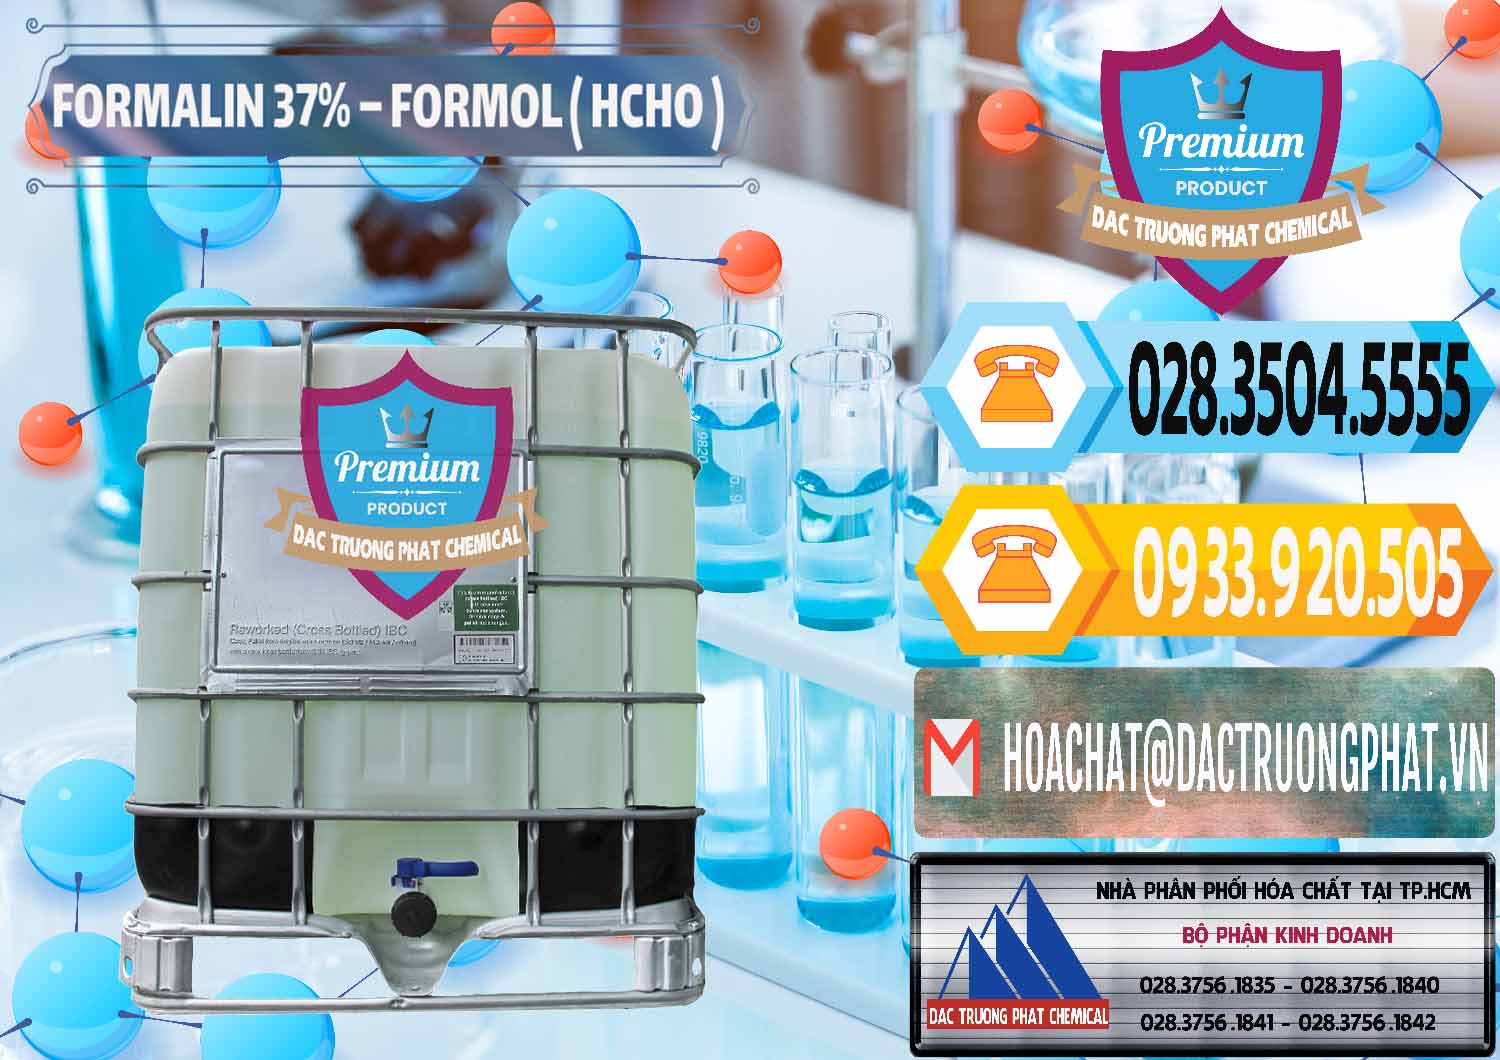 Nơi phân phối & cung cấp Formalin - Formol ( HCHO ) 37% Việt Nam - 0187 - Đơn vị chuyên cung cấp - bán hóa chất tại TP.HCM - hoachattayrua.net